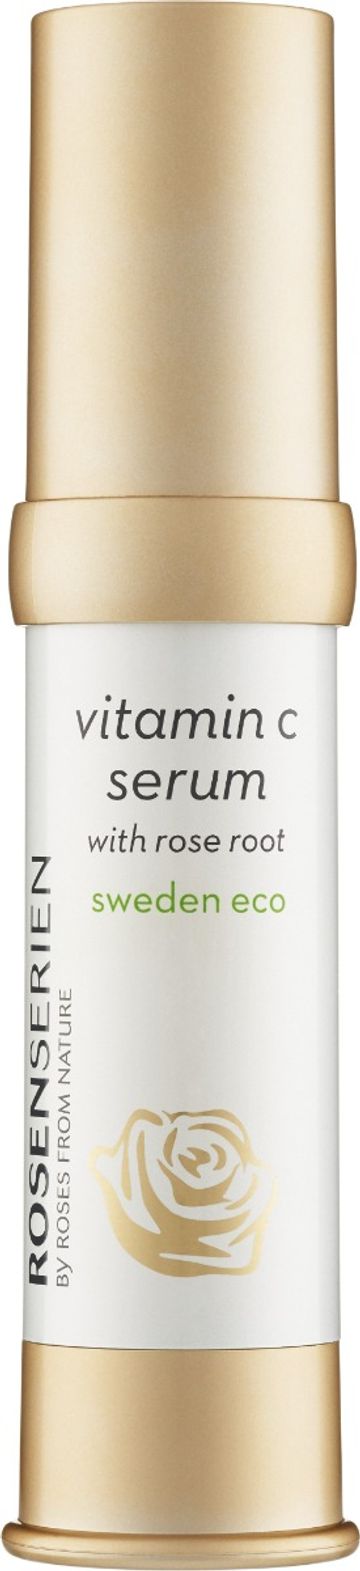 Rosenserien Vitamin C Serum